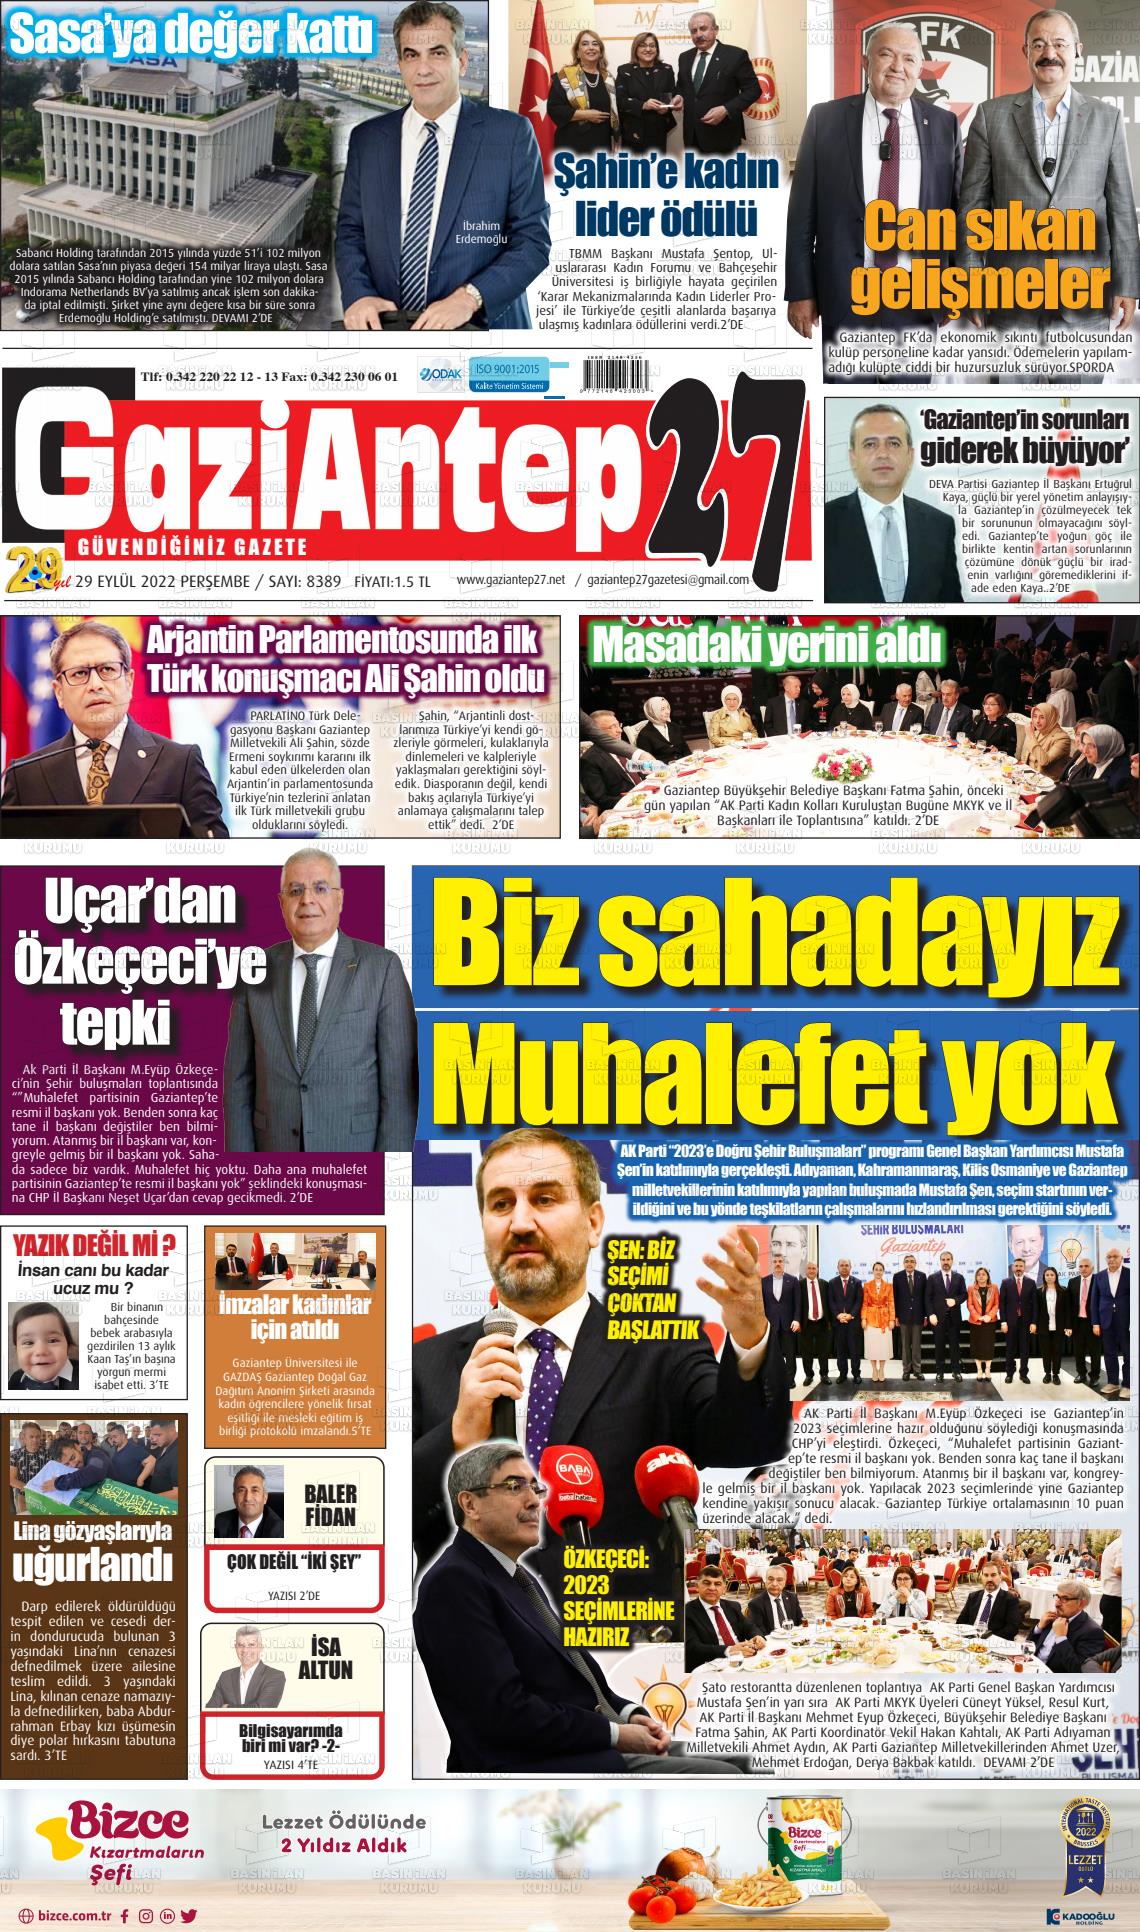 29 Eylül 2022 Gaziantep 27 Gazete Manşeti